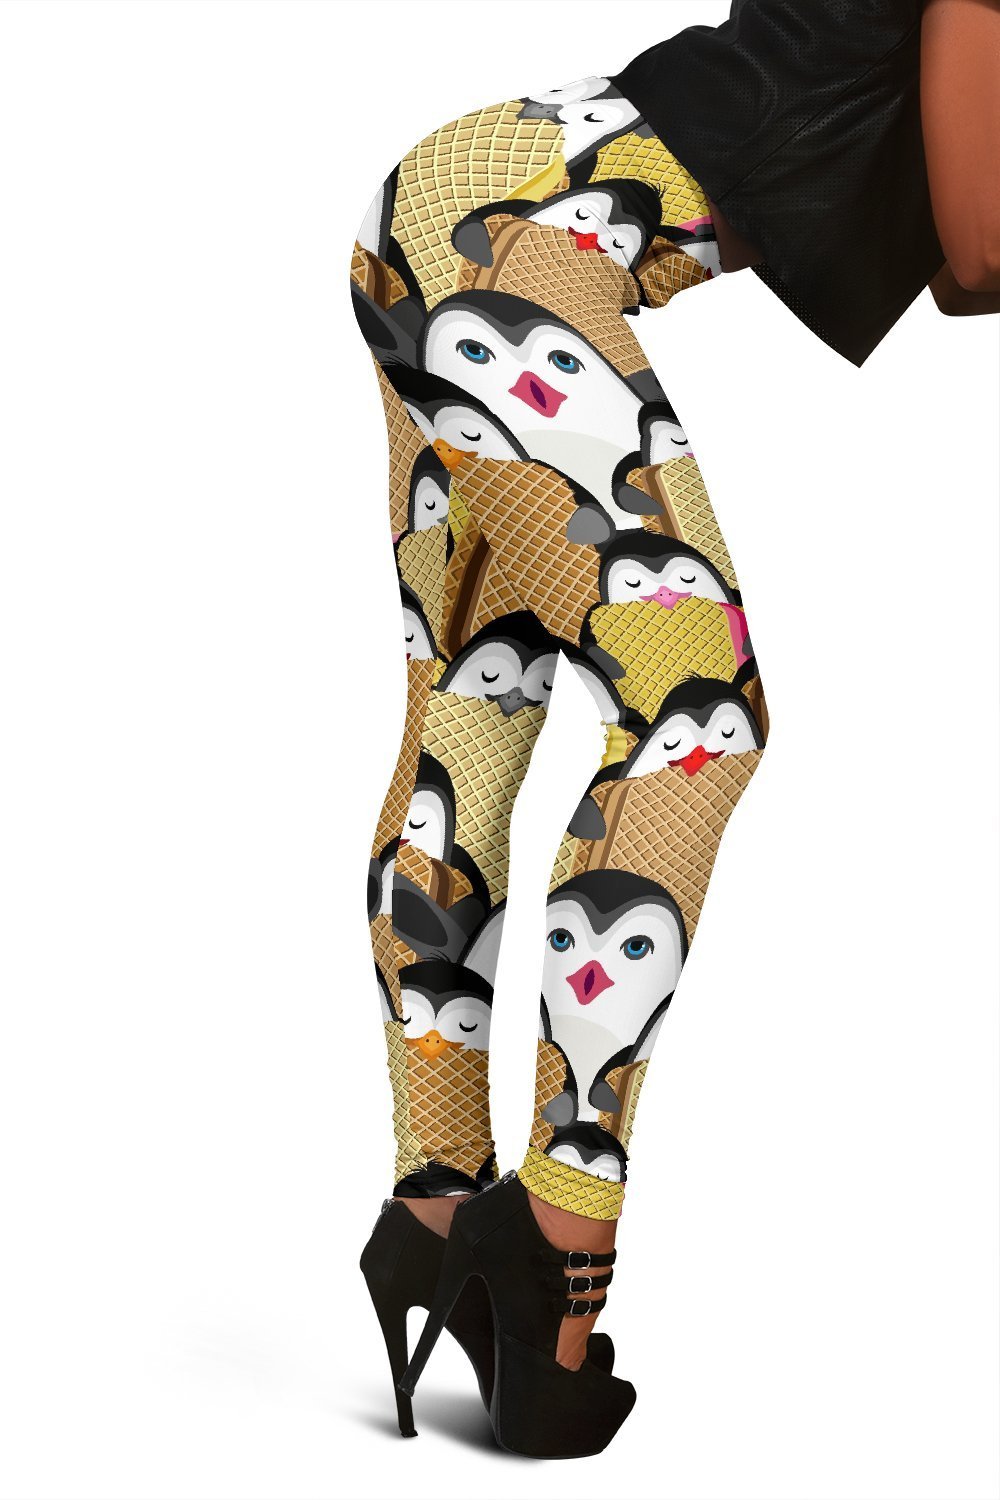 Penguin Waffle Pattern Print Women Leggings-grizzshop